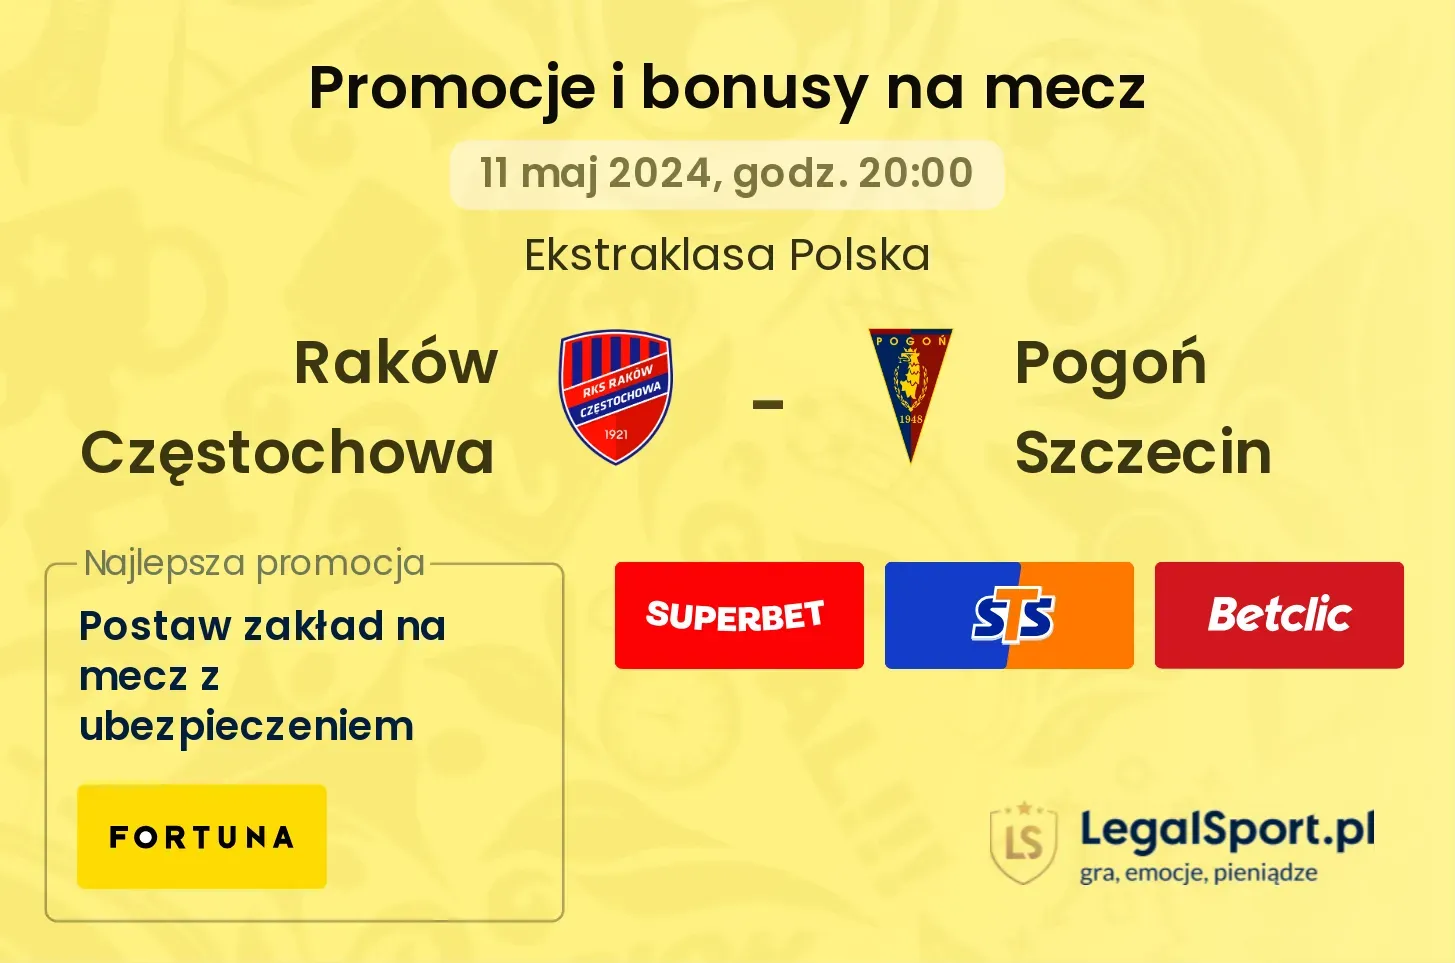 Raków Częstochowa - Pogoń Szczecin promocje i bonusy (11.05, 20:00)